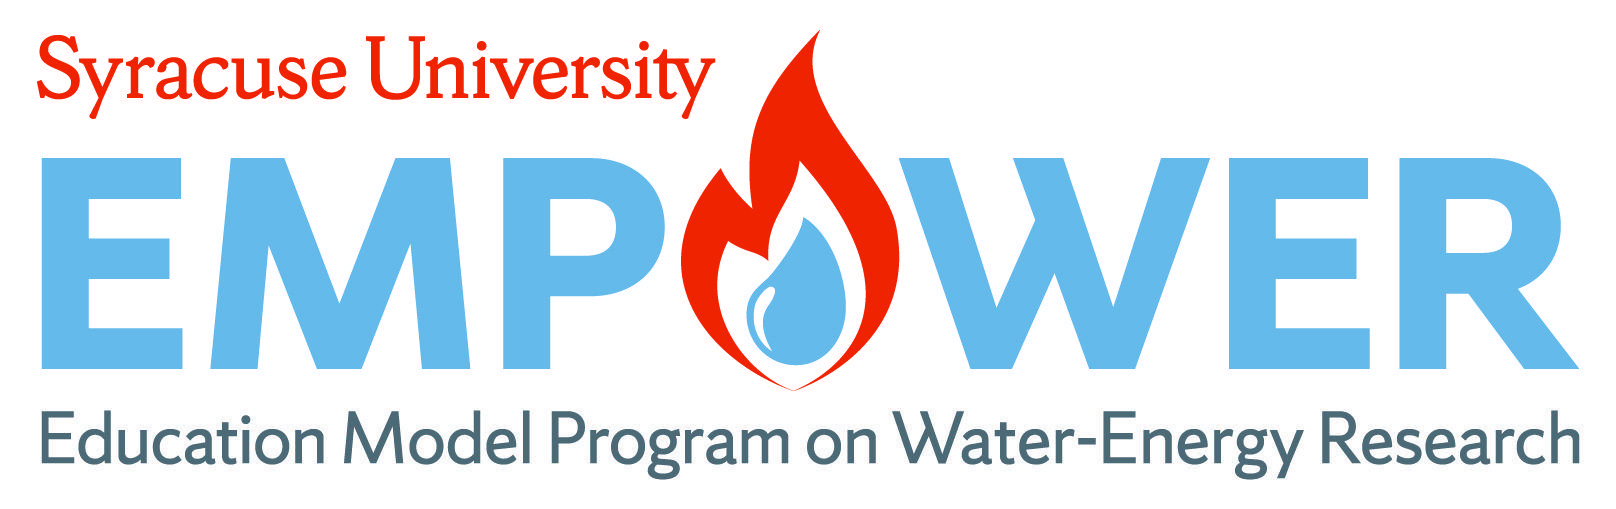 Empower Logo - EMPOWER Logo - EMPOWER: Education Model Program on Water-Energy ...